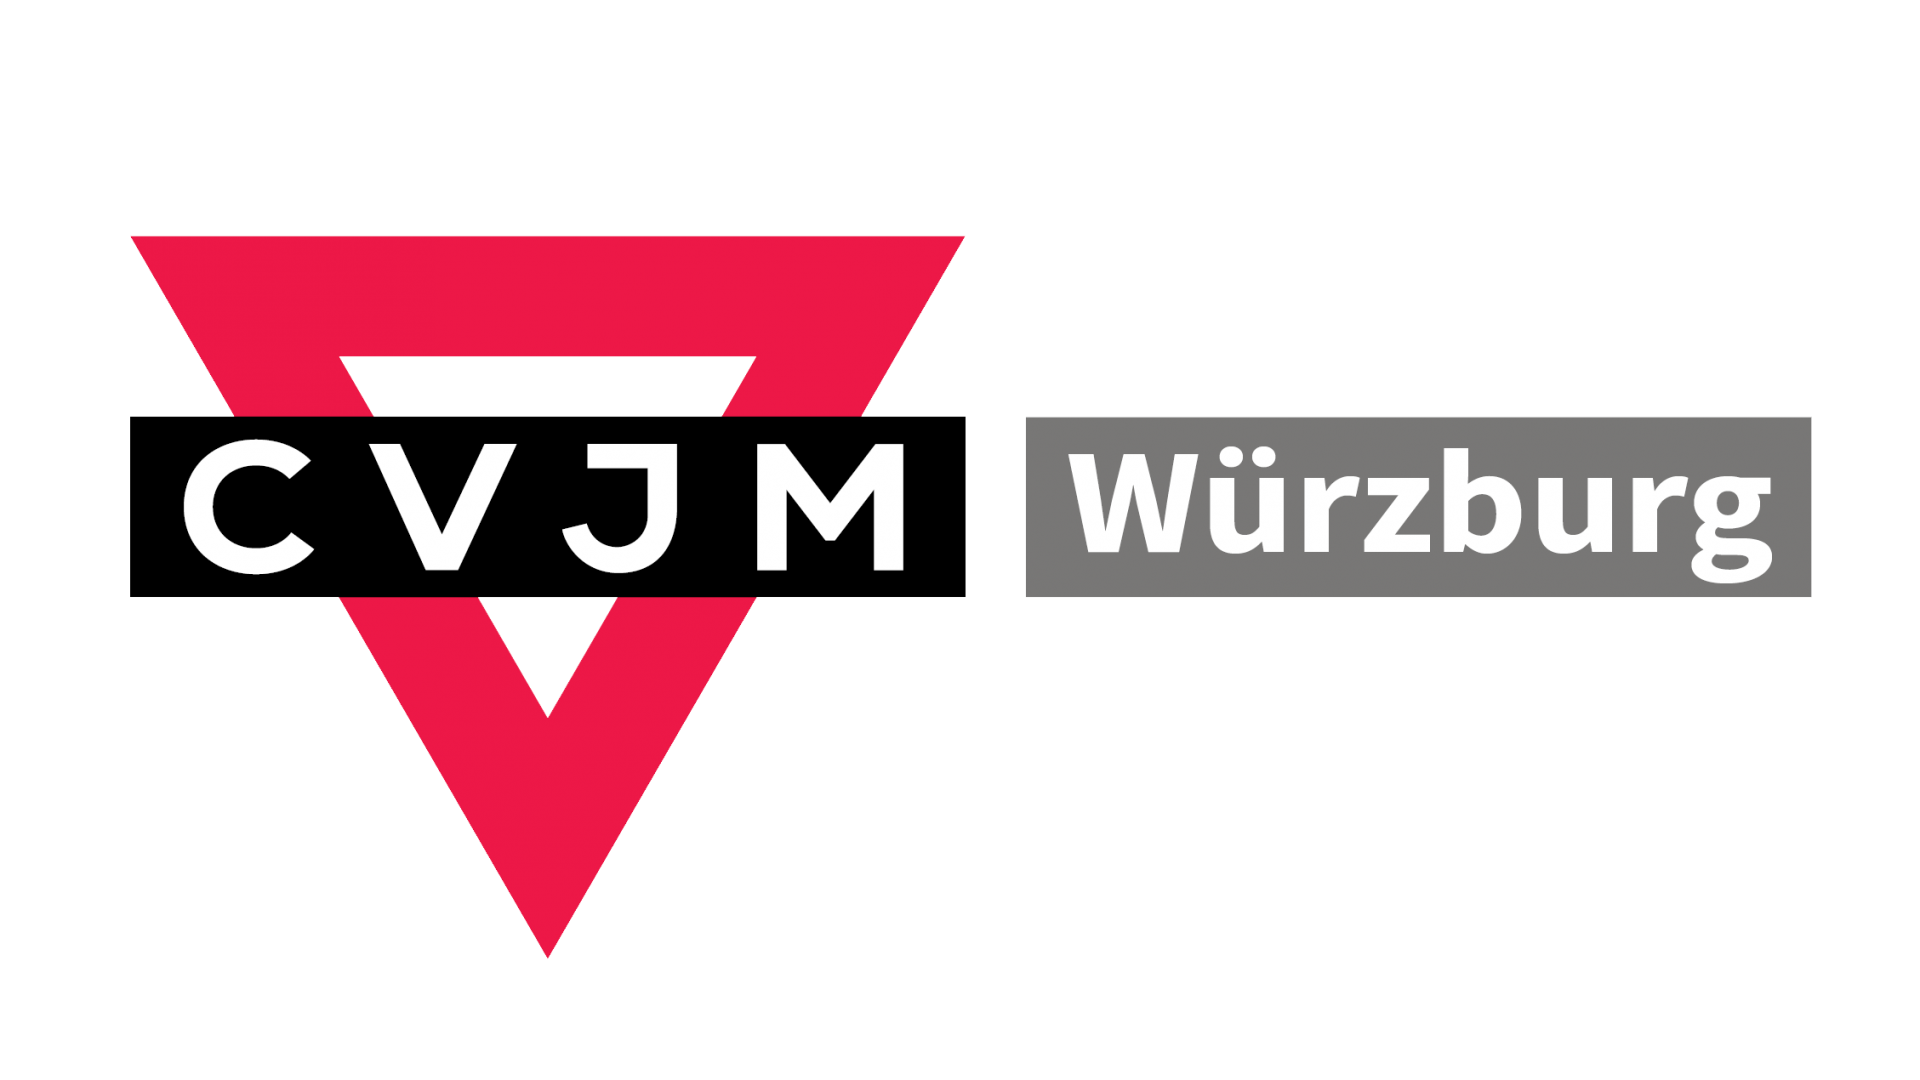 CVJM Würburg